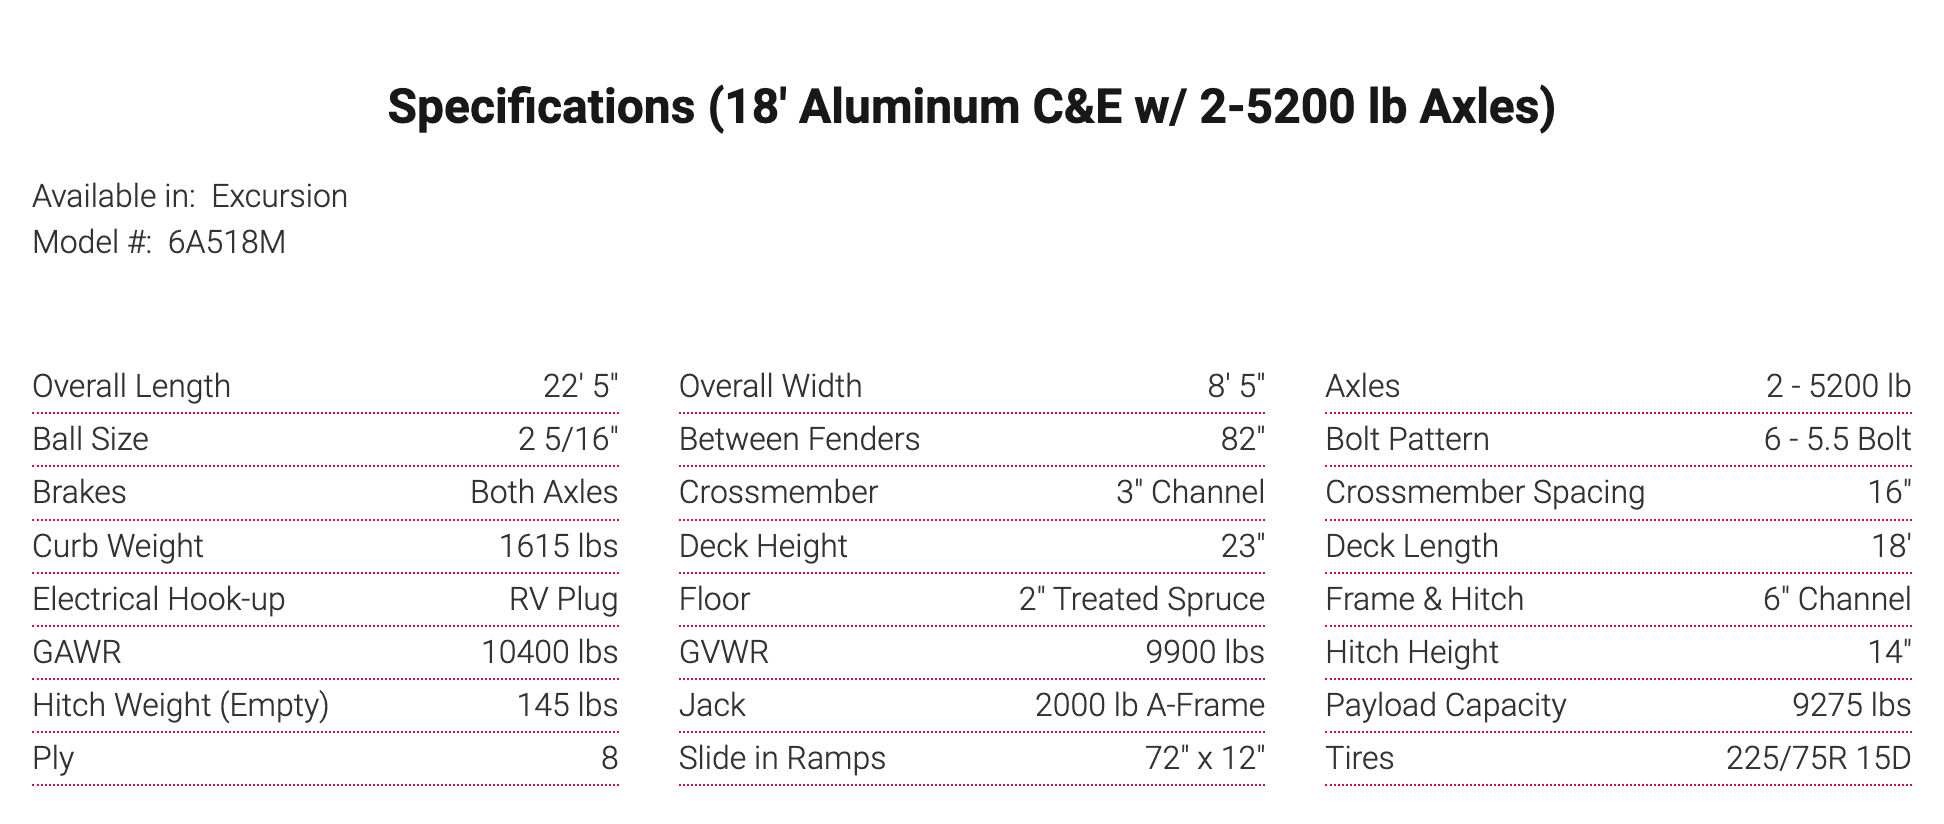 Specifications (18' Aluminum C&E w/ 2-5200 lb Axles)
